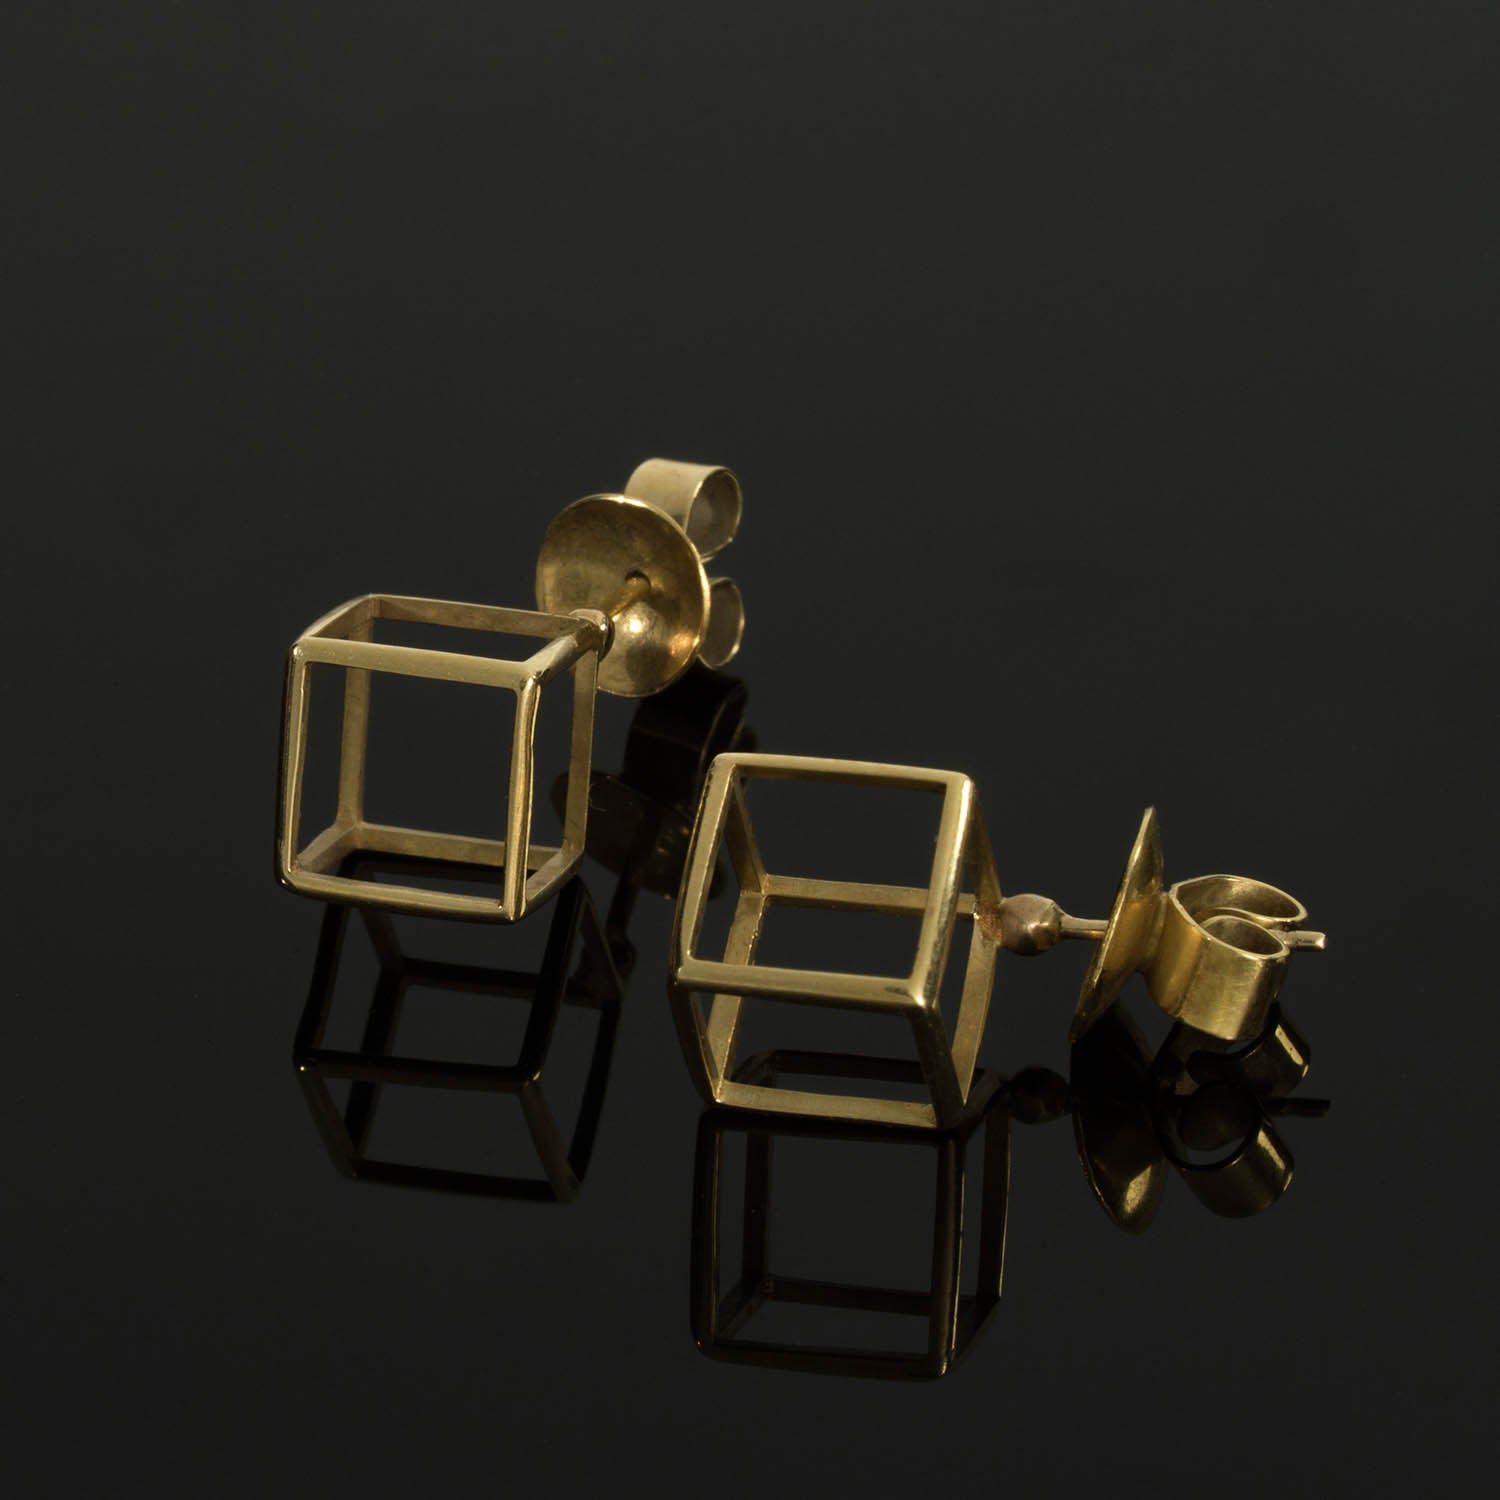 18k - Geometric Stud Cube Earrings